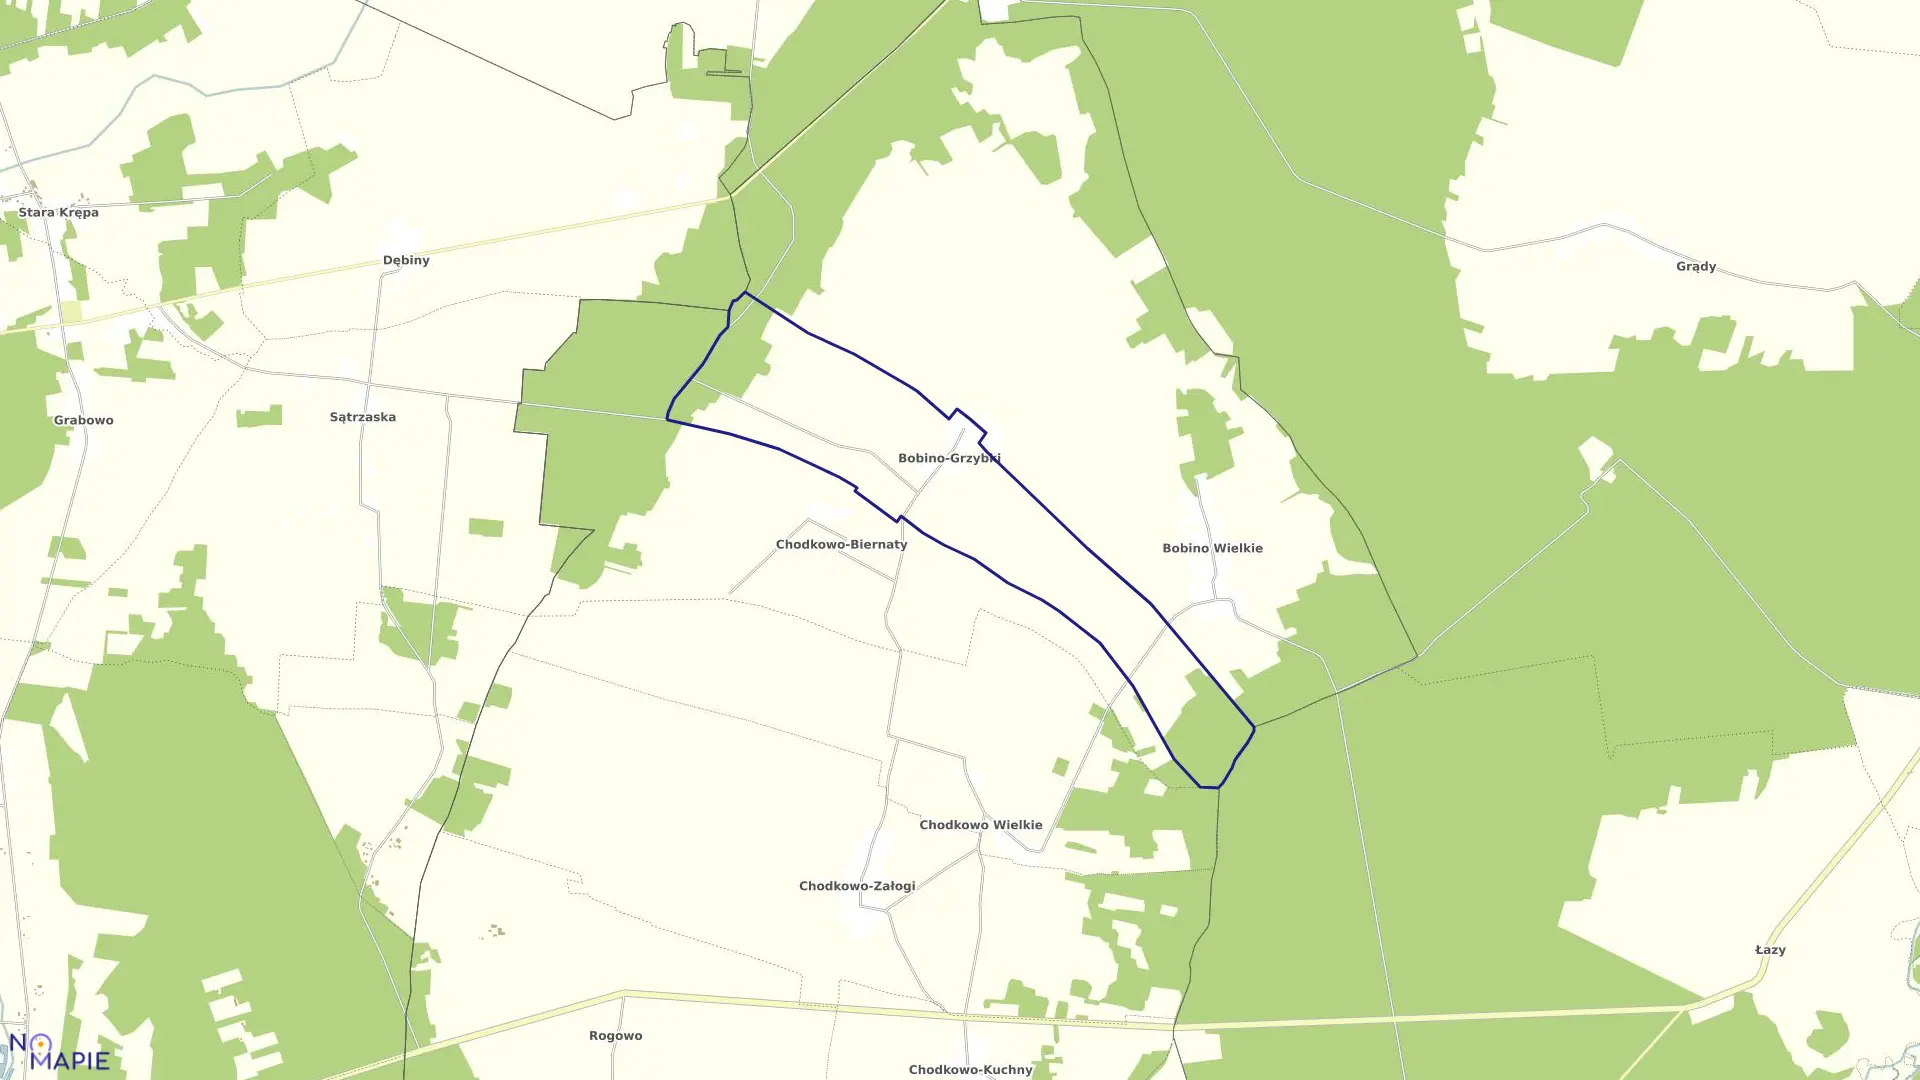 Mapa obrębu BOBINO GRZYBKI w gminie Płoniawy-Bramura